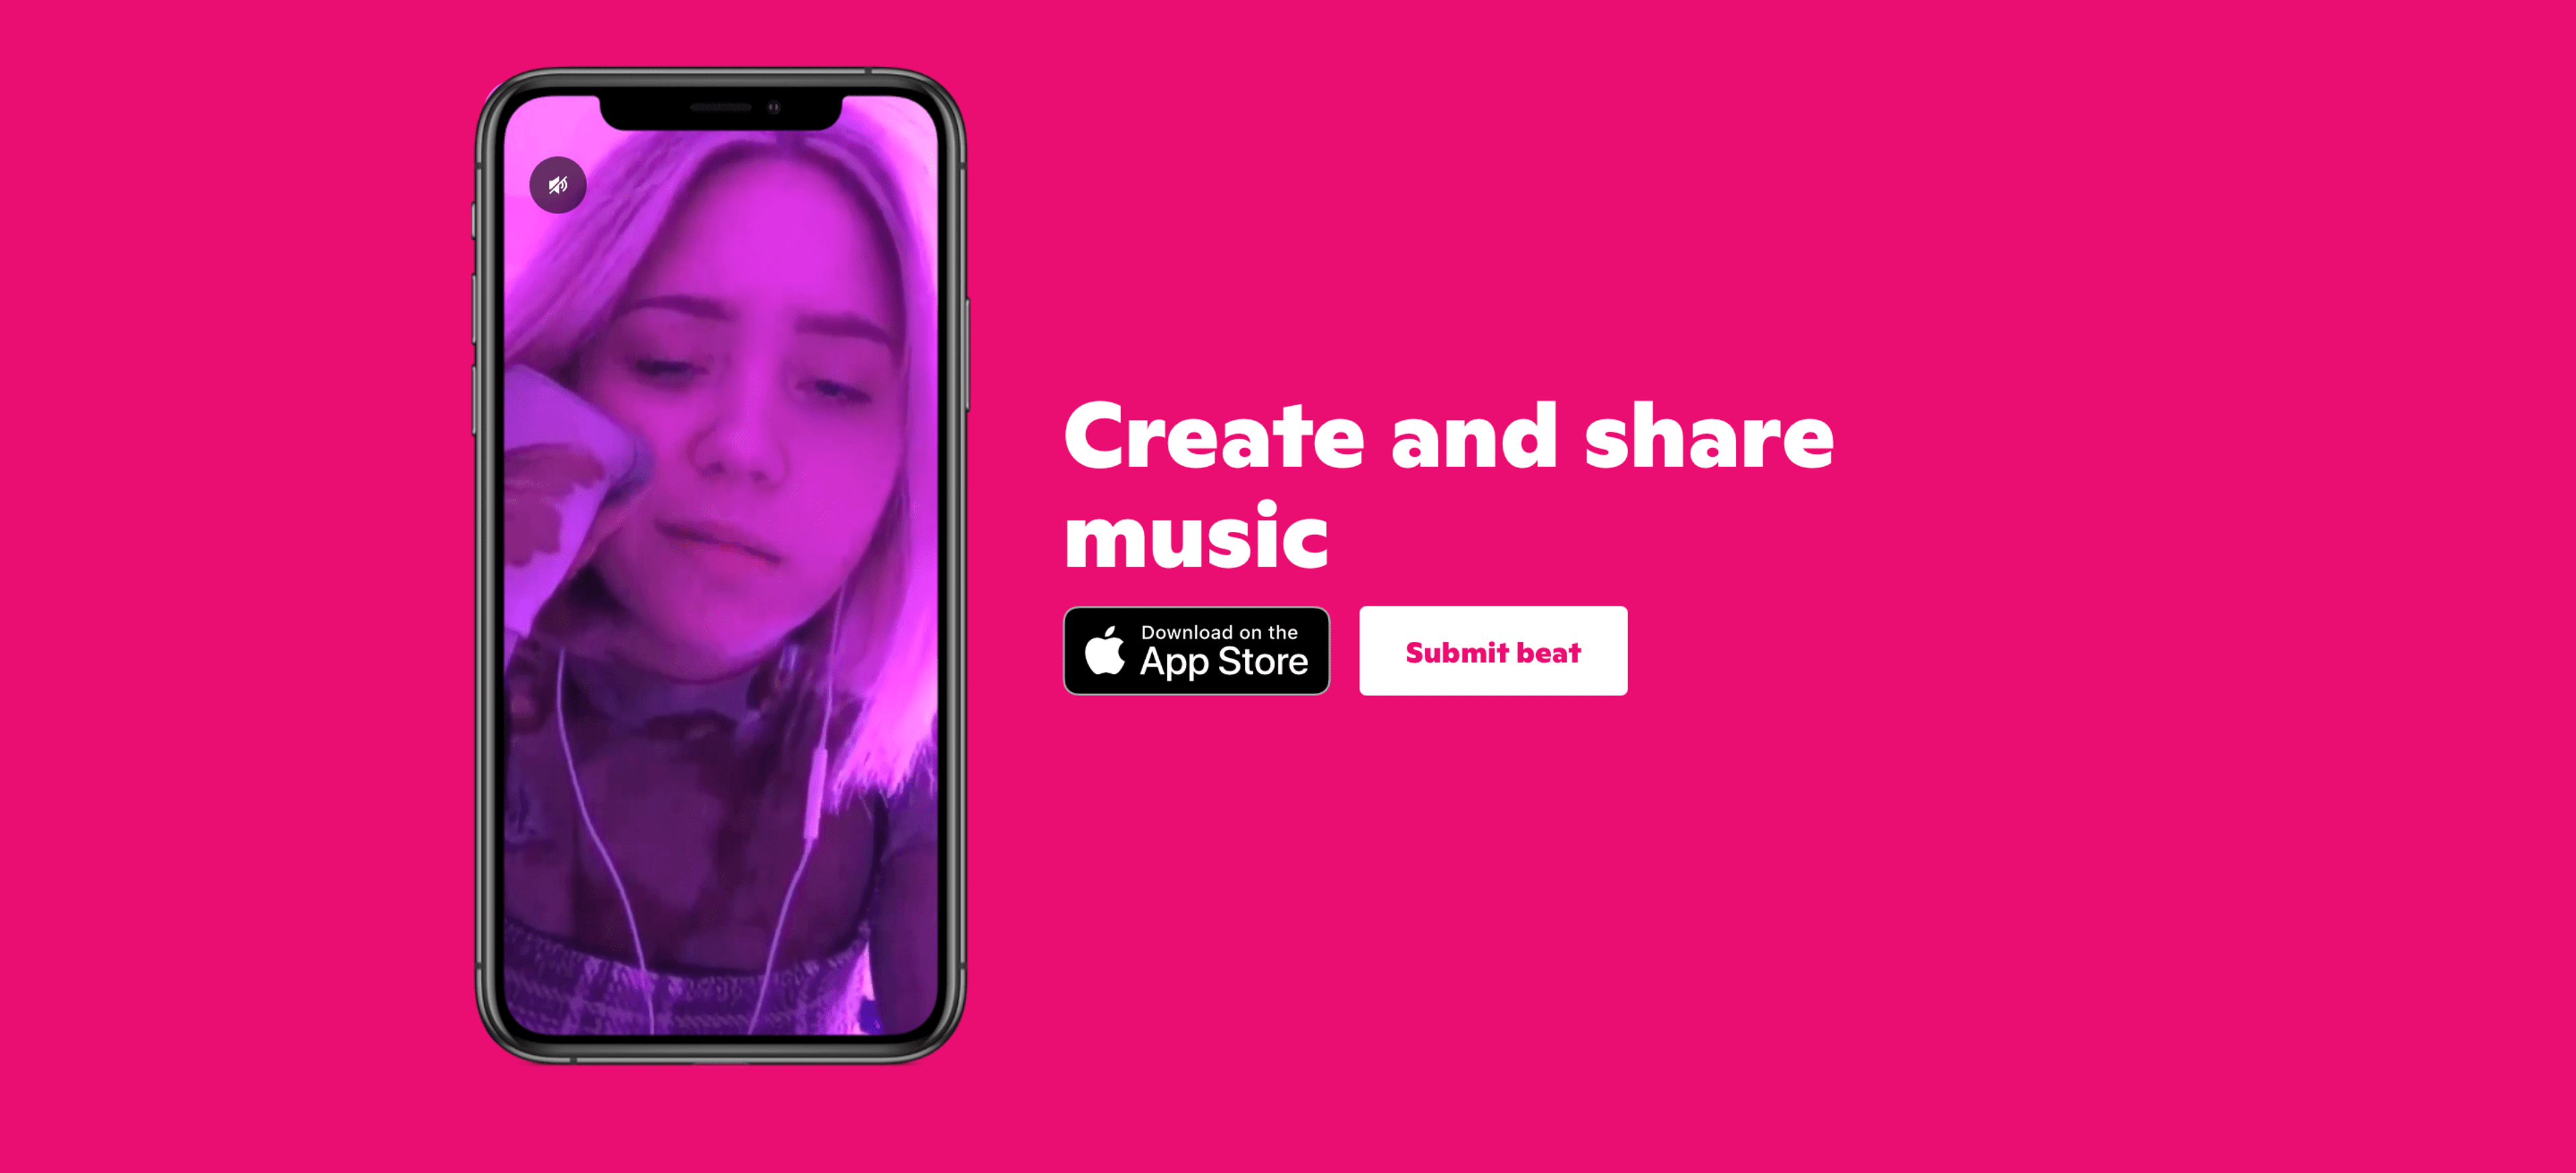 Snapchat ha acquisito Voisey, un’app per creare e condividere canzoni